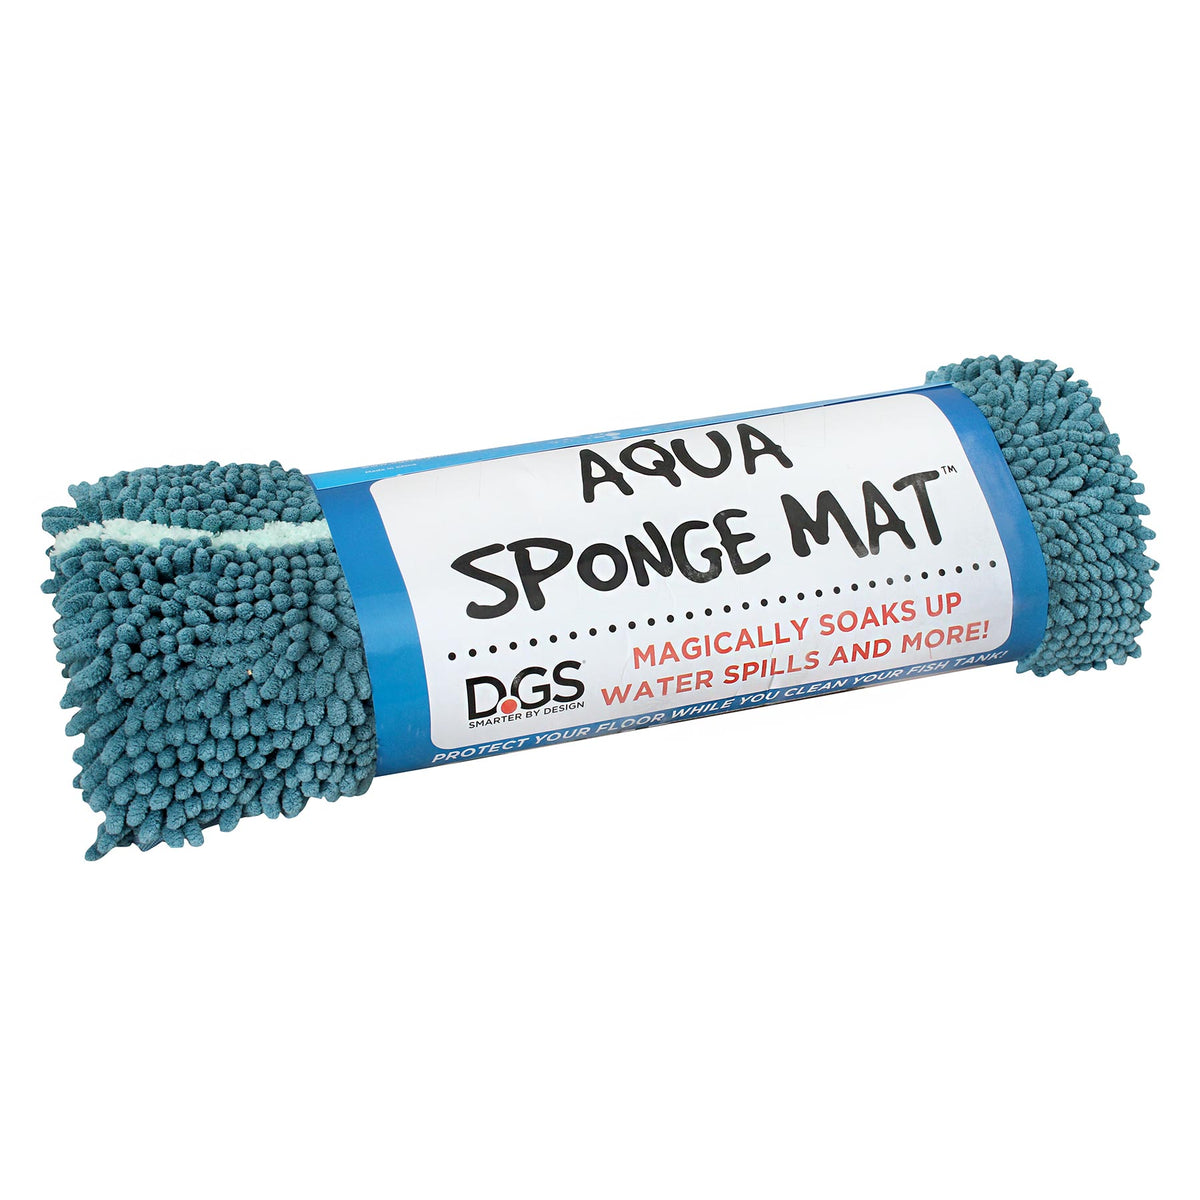 DGS Aqua Sponge Mat